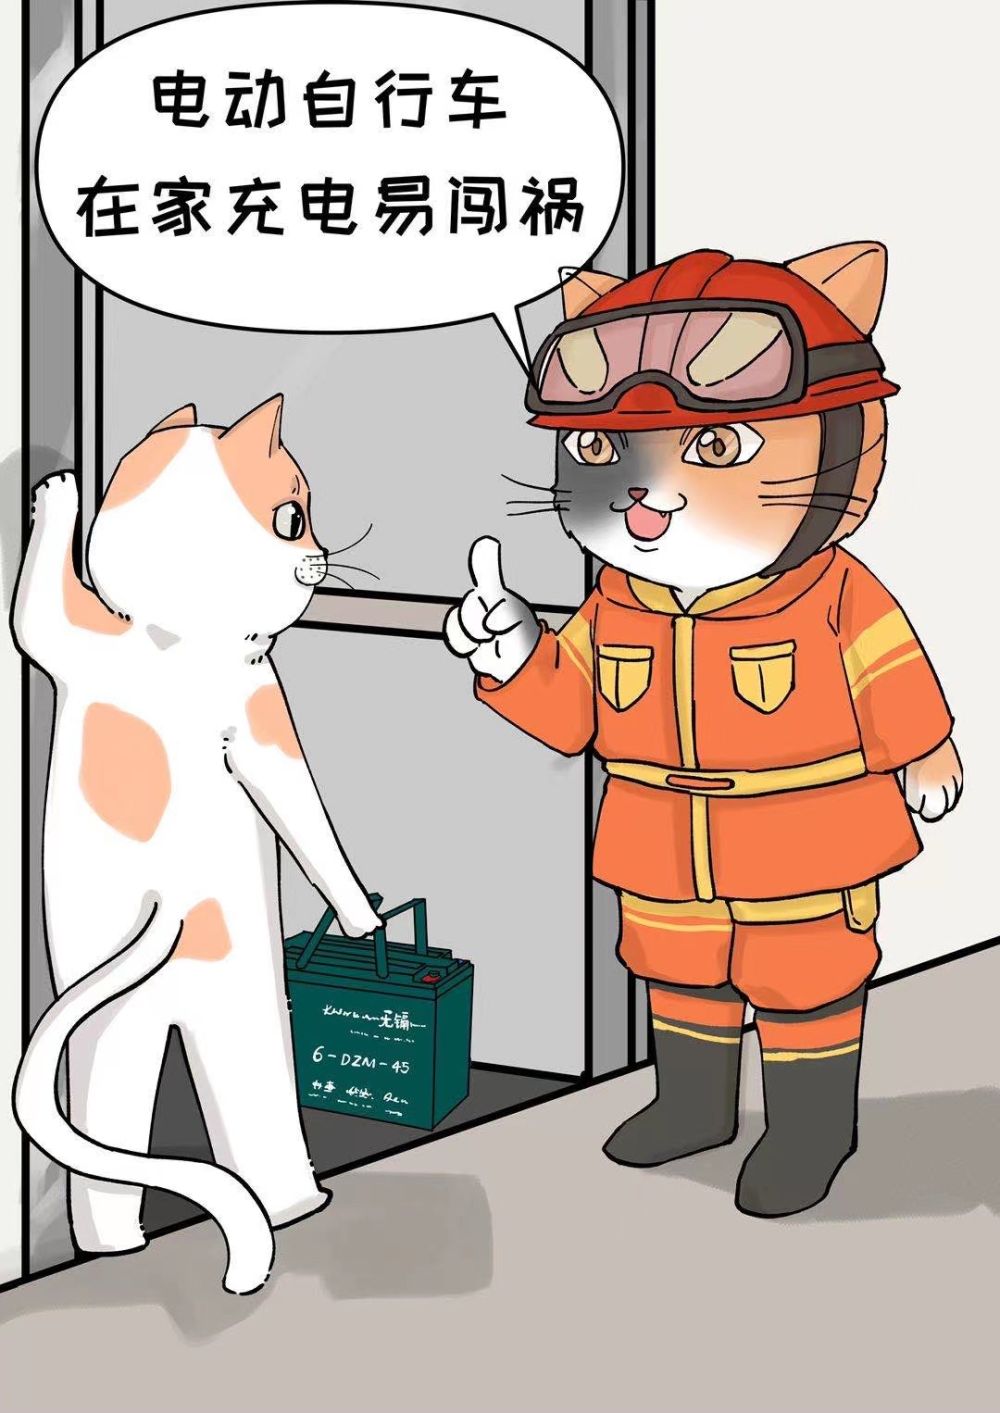 上海市徐汇区消防救援支队制作